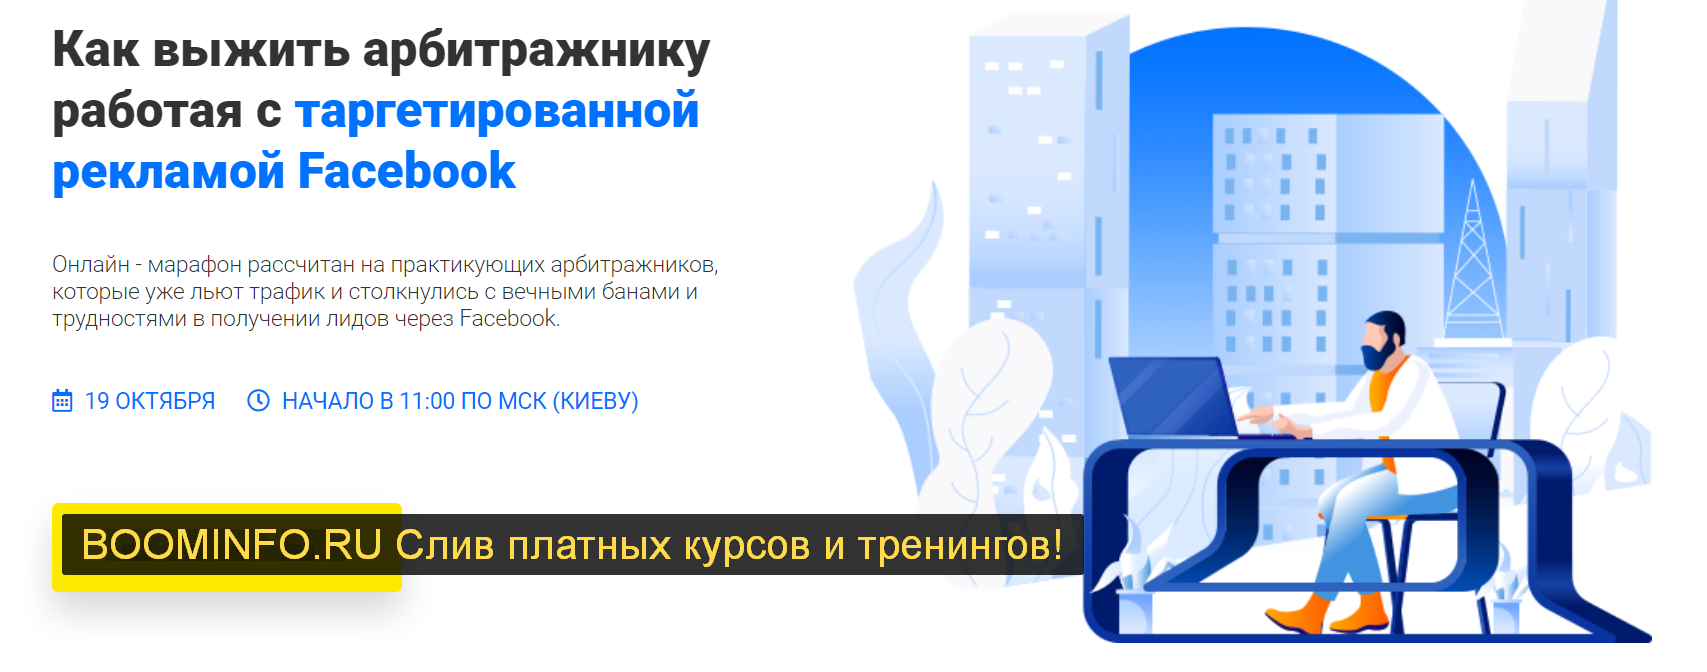 richadvert-kak-vyzhit-arbitrazhniku-rabotaja-s-targetirovannoj-reklamoj-facebook-2019-png.742